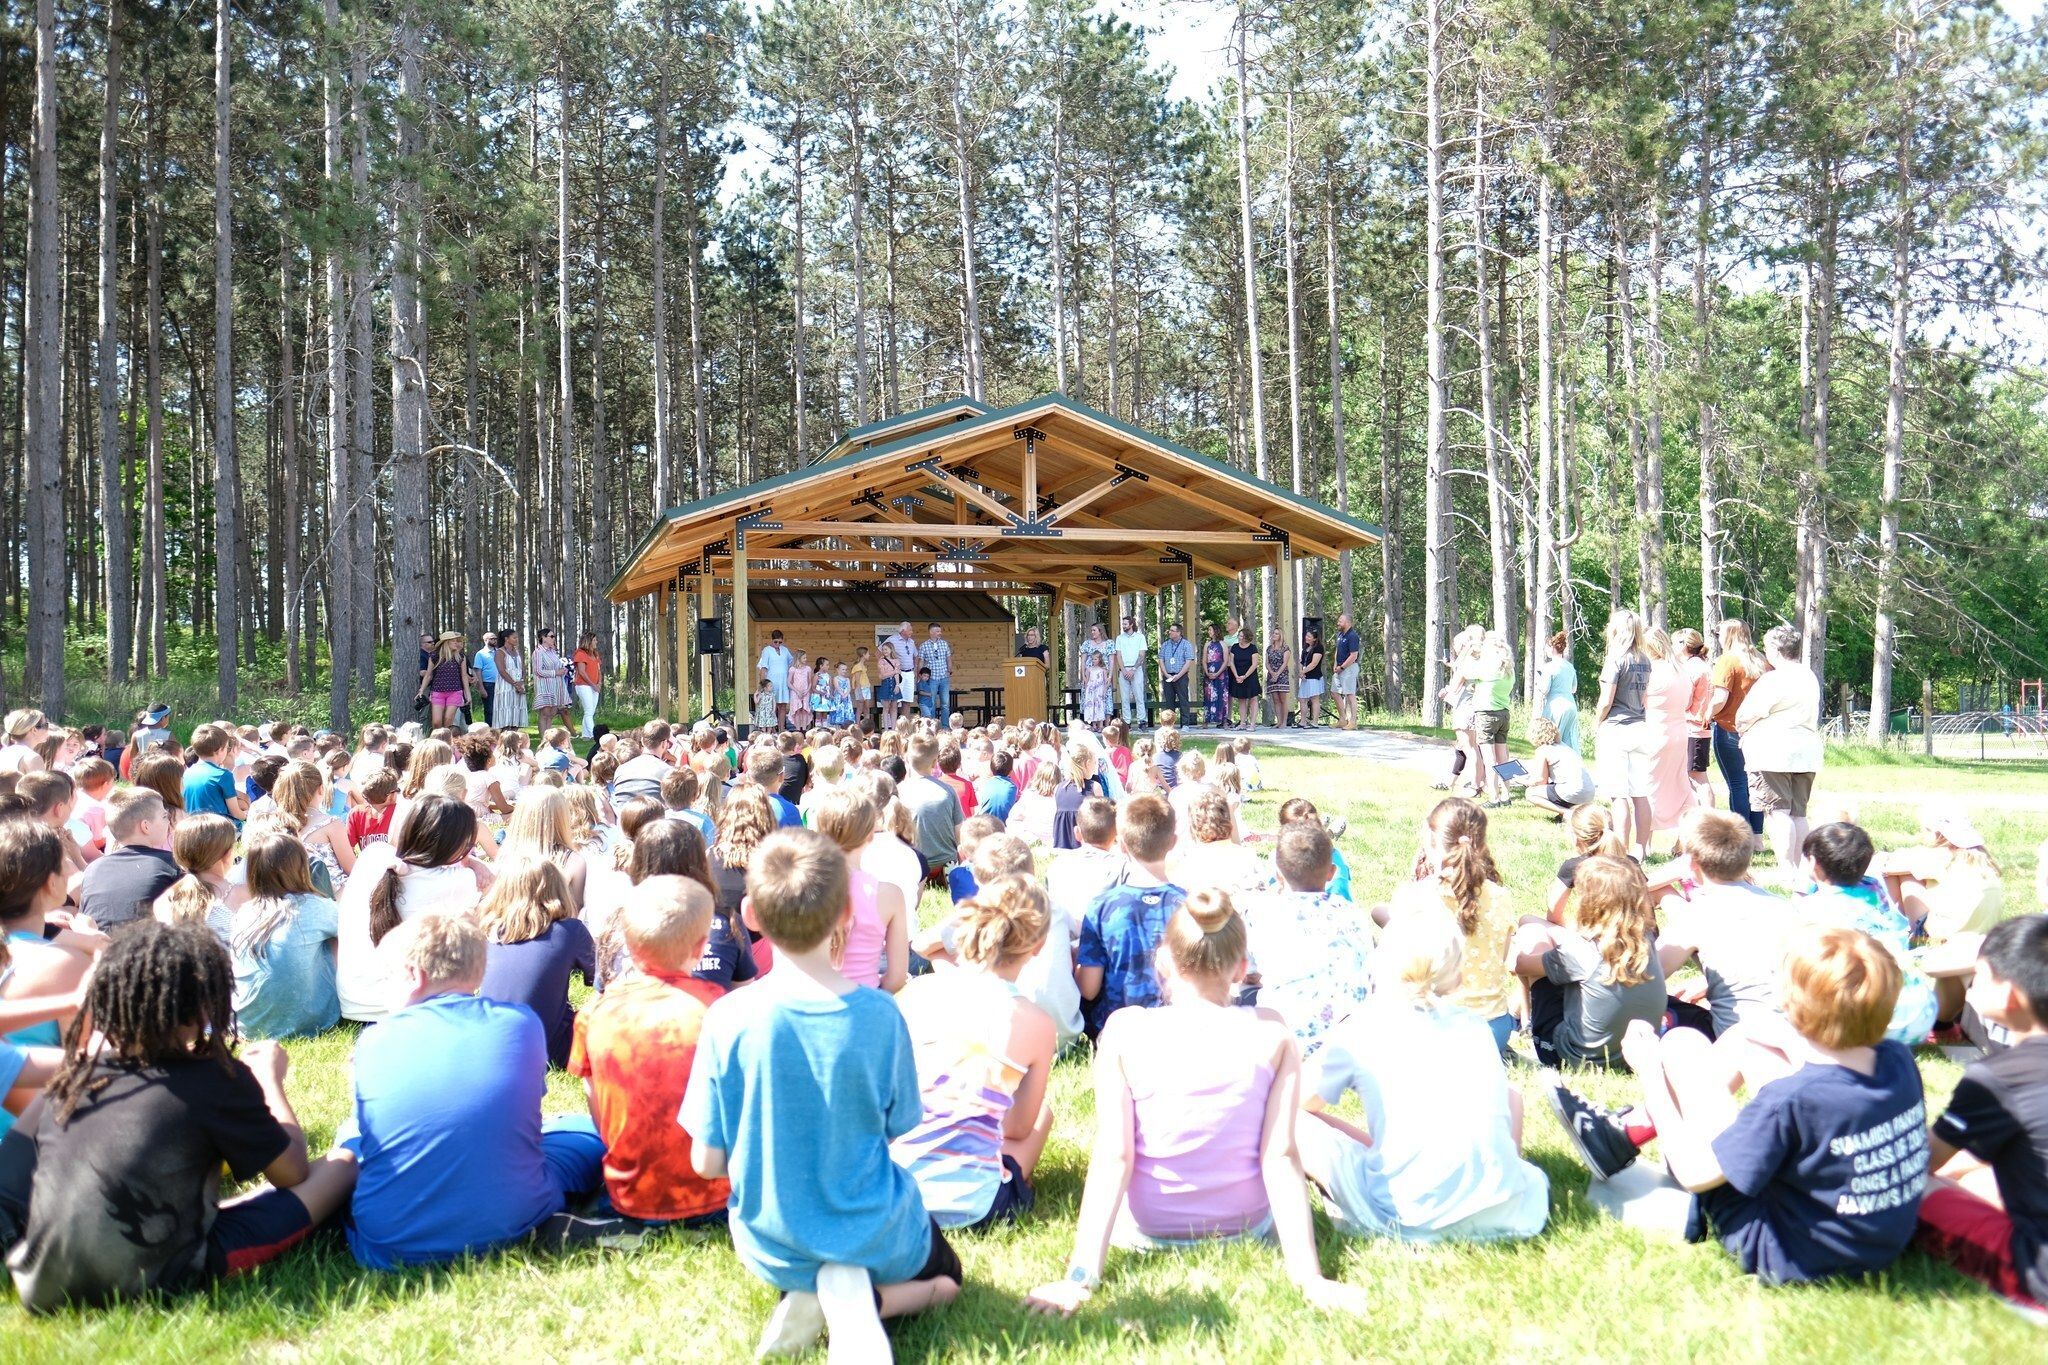 Hmielewski and Kolaszewski Family Donates Pavilion to Suamico Elementary